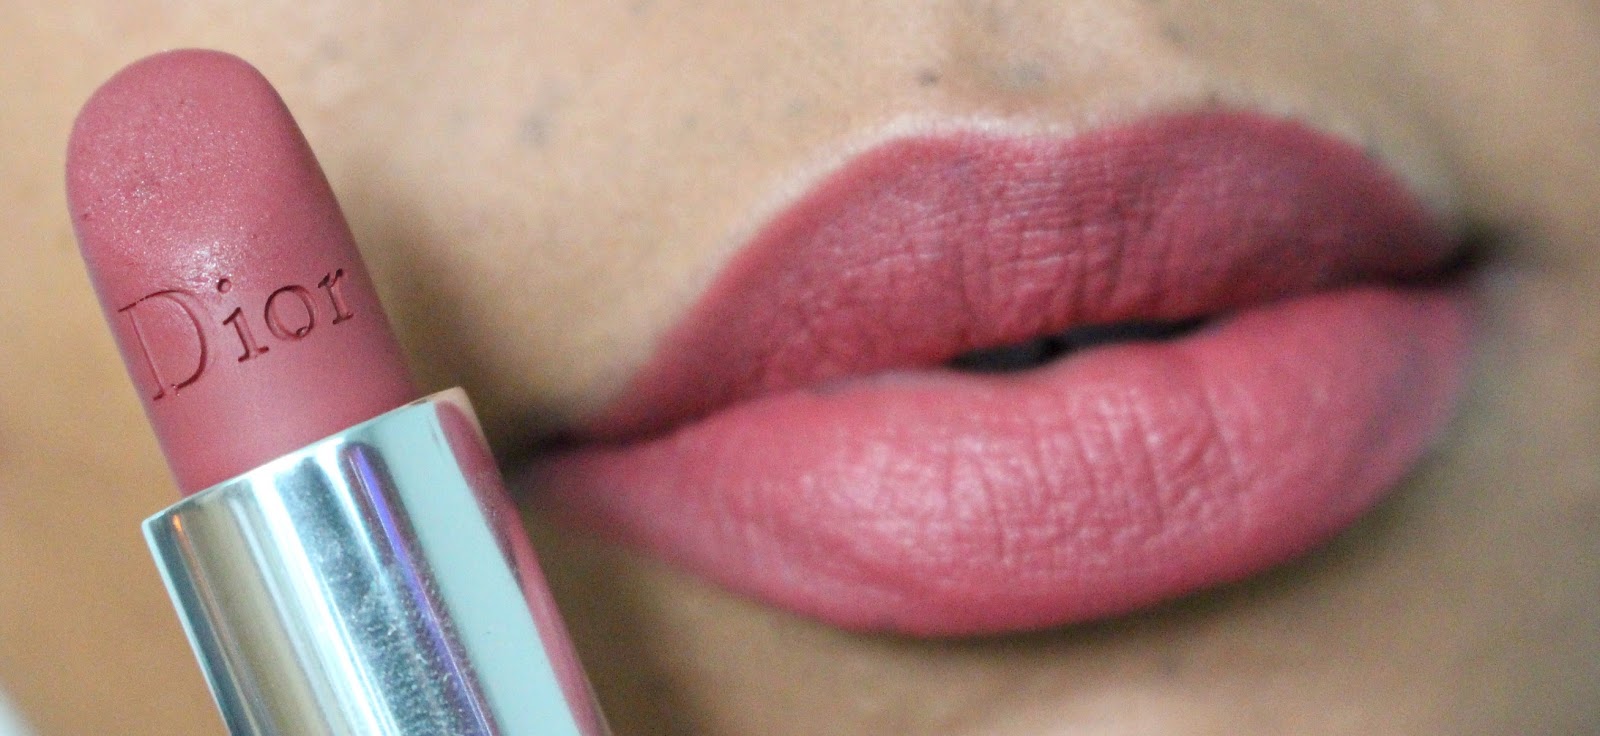 dior lipstick swatch